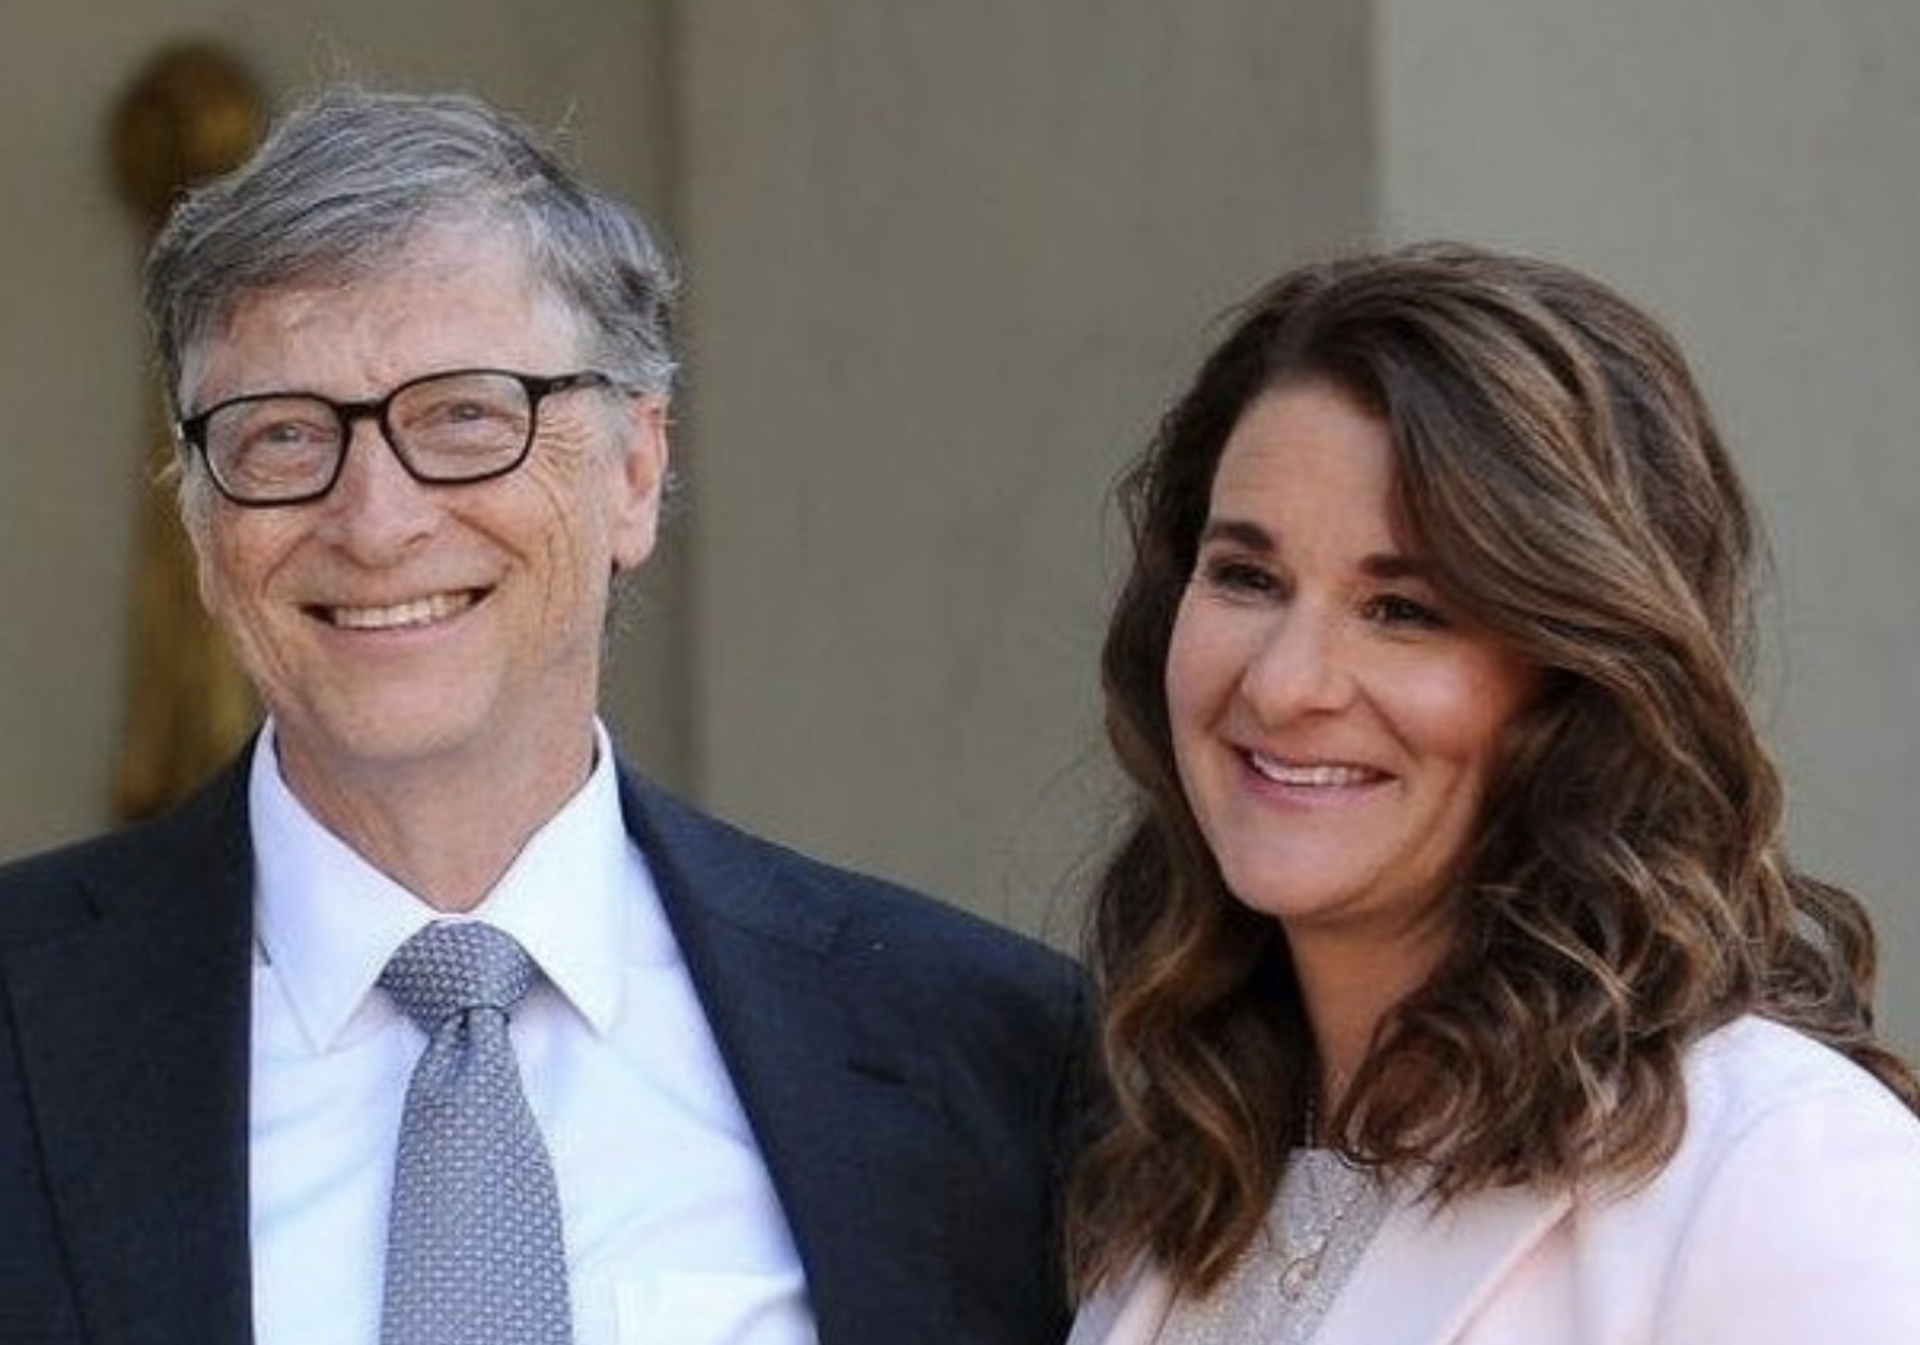 Confesiunea momentului în divorțul lui Bill Gates. Cine a fost de vină că s-a ajuns aici